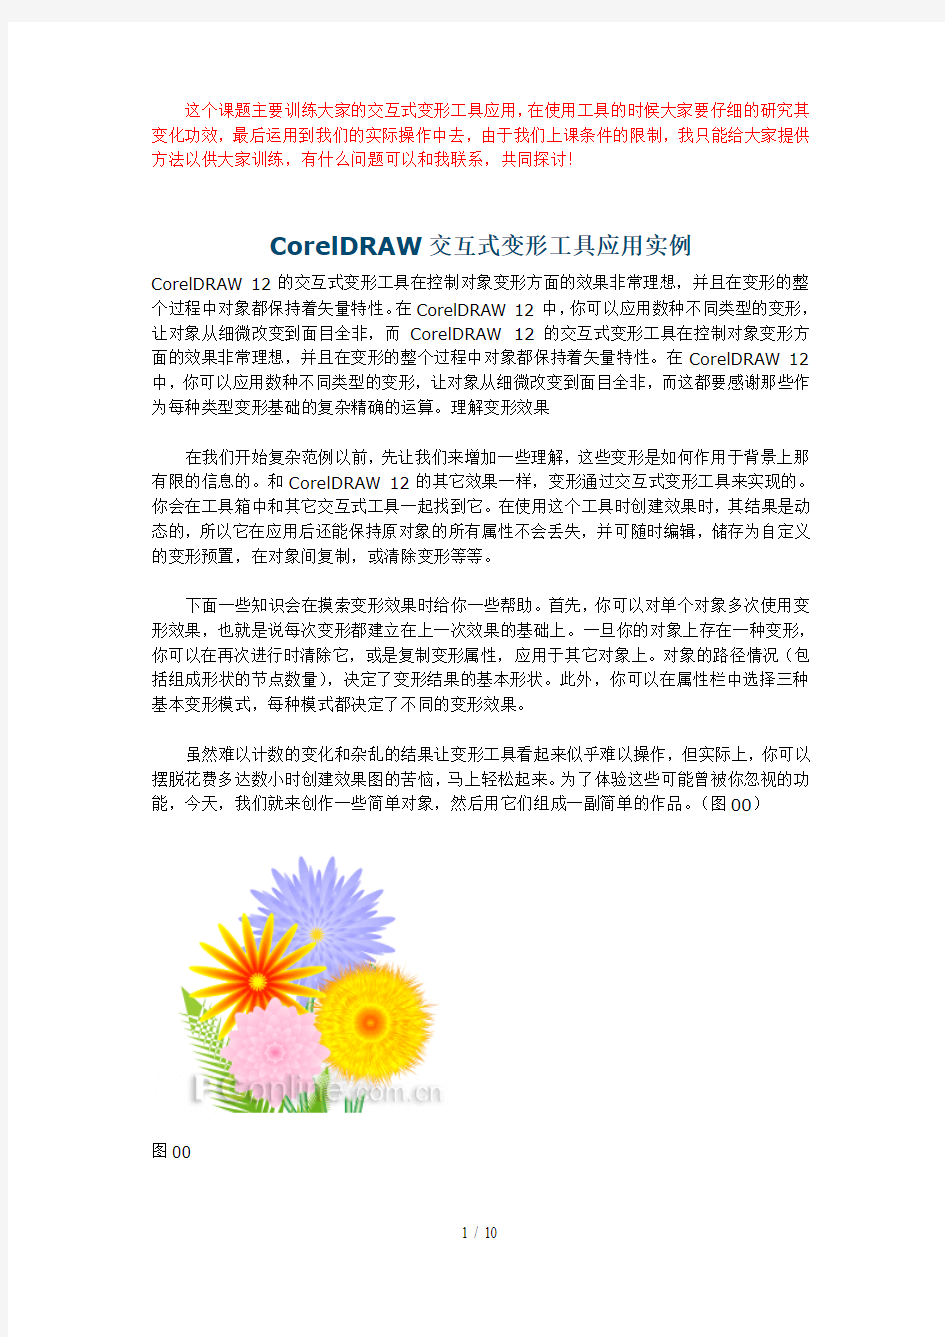 CorelDRAW交互式变形工具应用技术实例